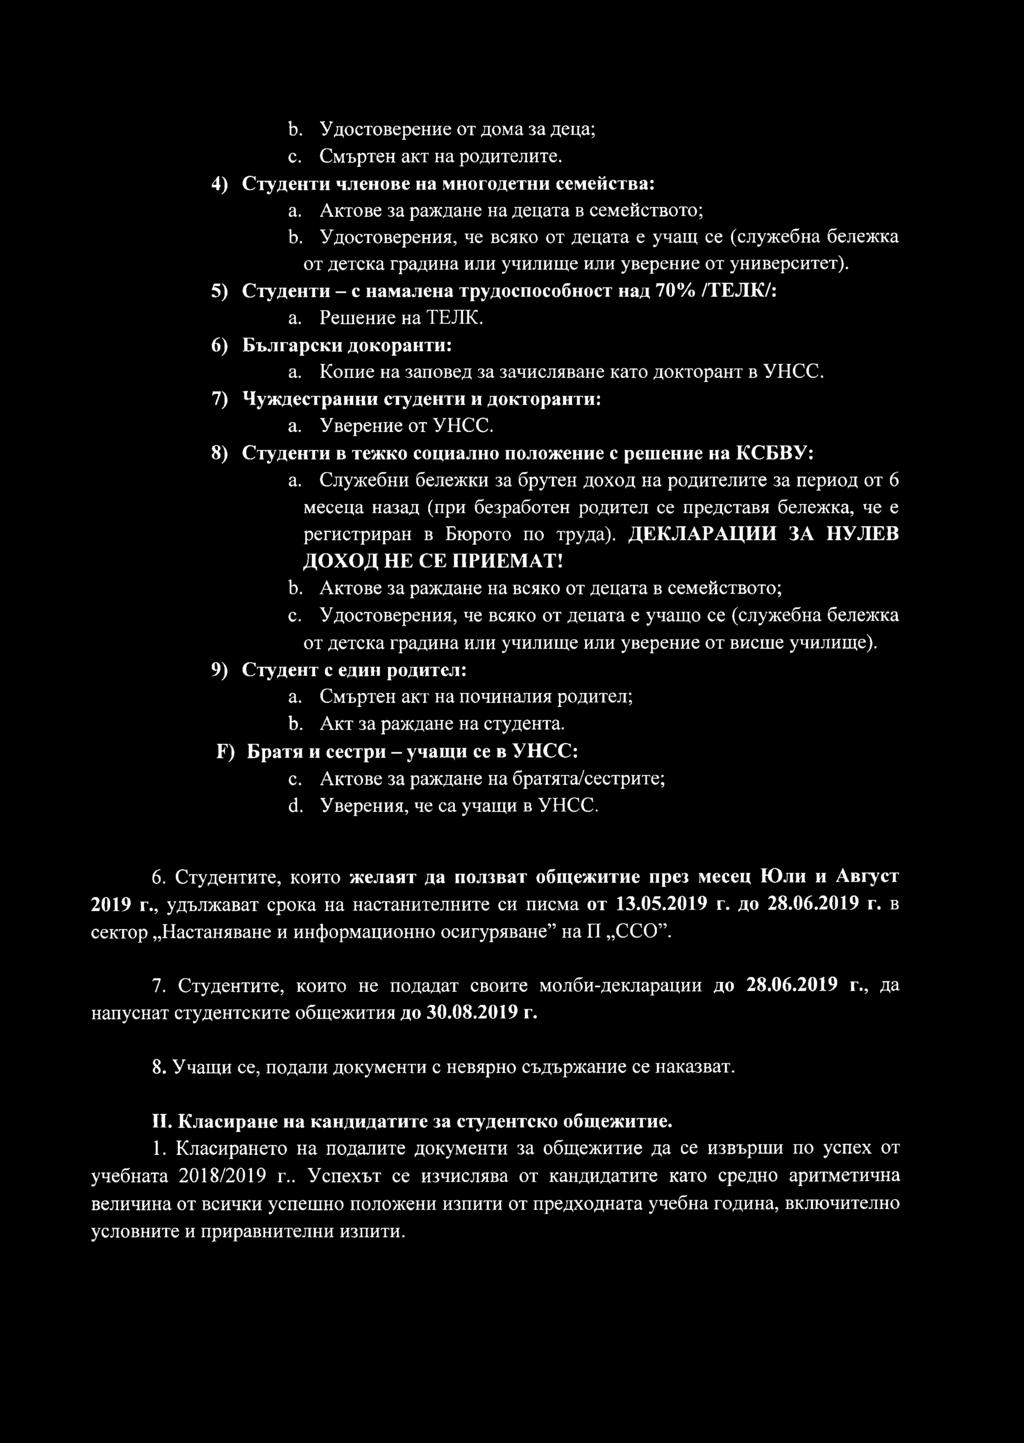 6) Български докоранти: а. Копие на заповед за зачисляване като докторант в УНСС. 7) Чуждестранни студенти и докторанти: а. Уверение от УНСС.